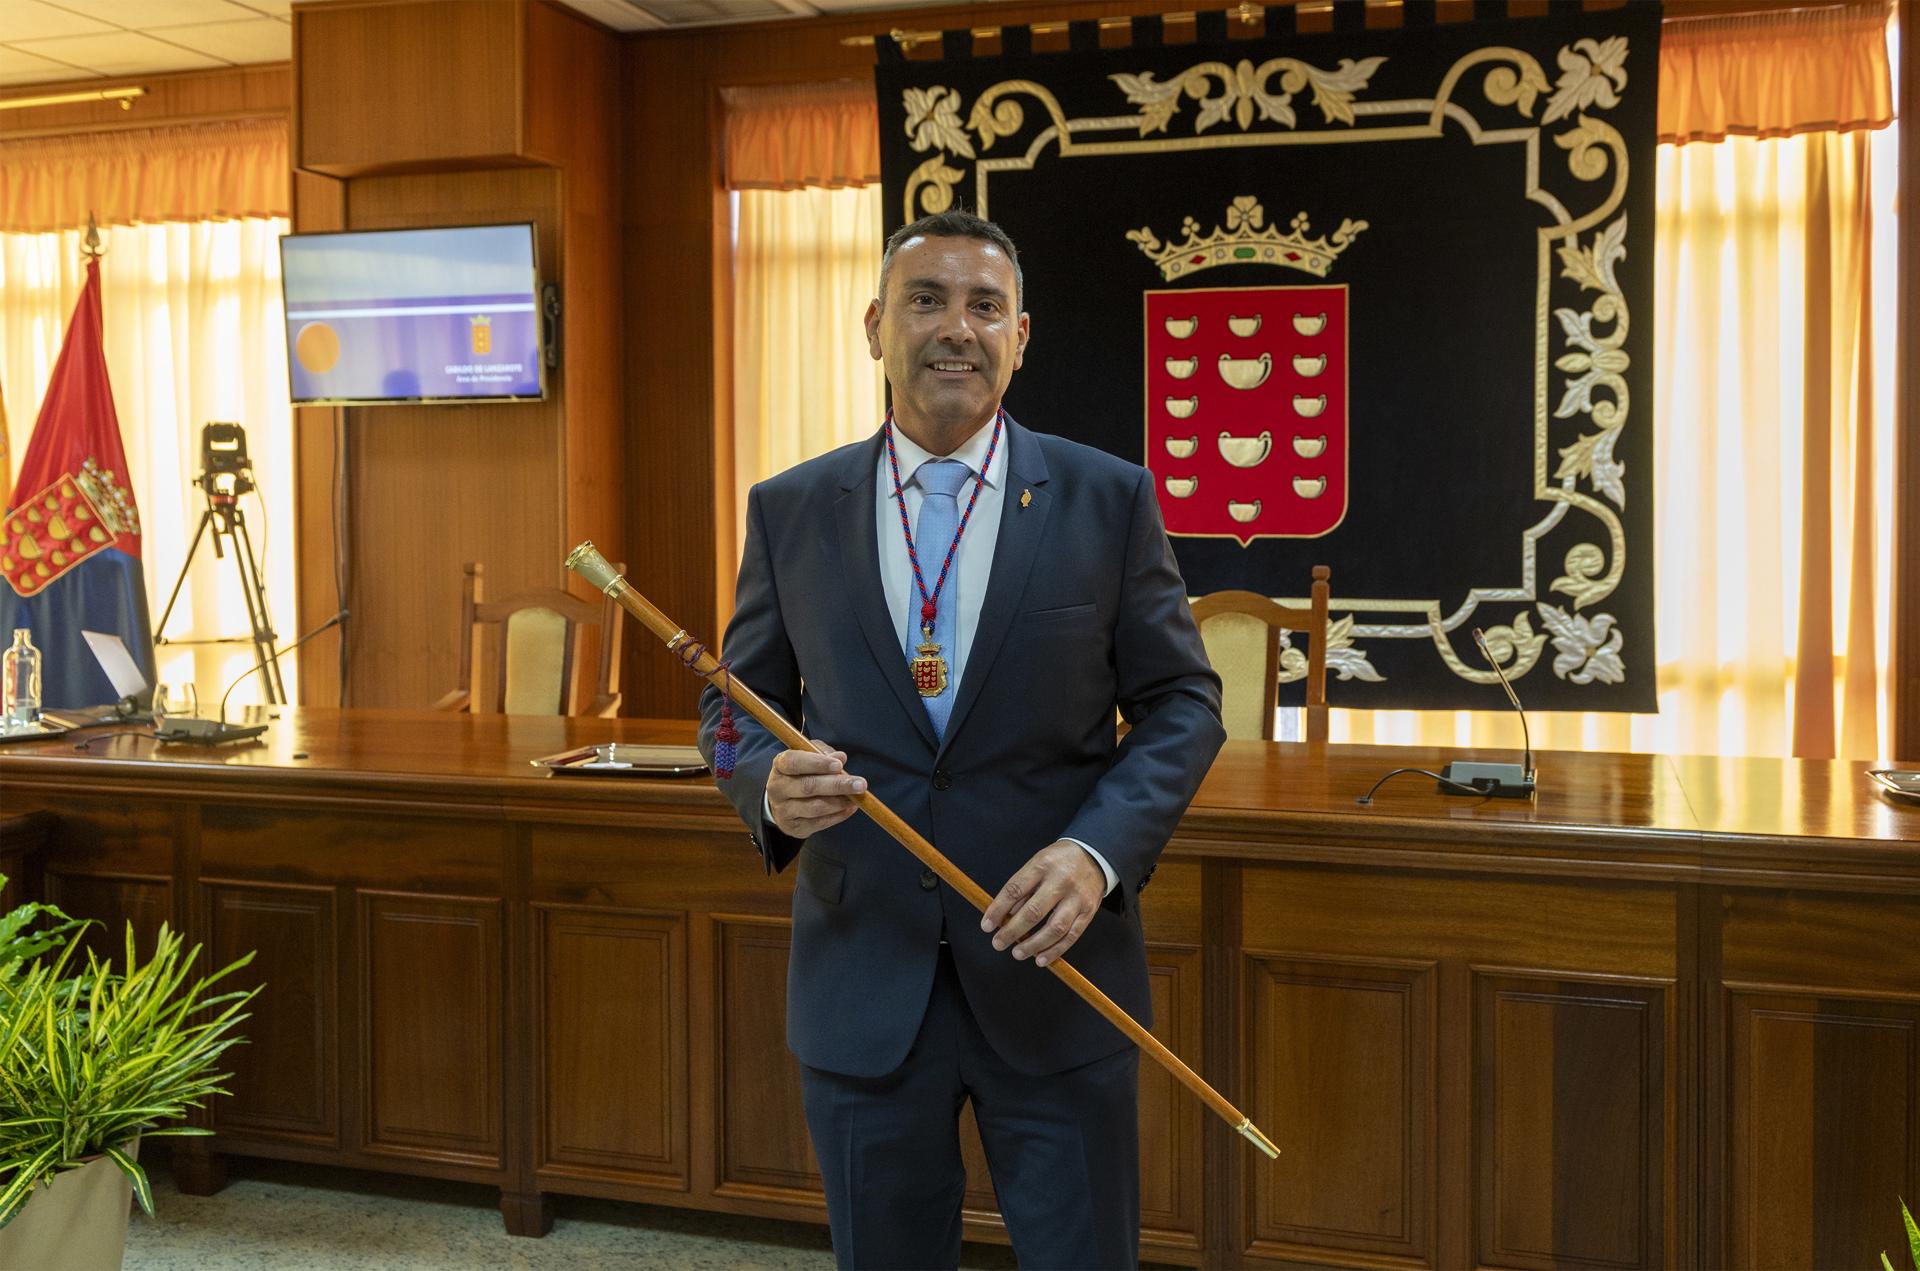 Foto de archivo del presidente del Cabildo de Lanzarote, Oswaldo Betancort, de Coalición Canaria. EFE/Adriel Perdomo